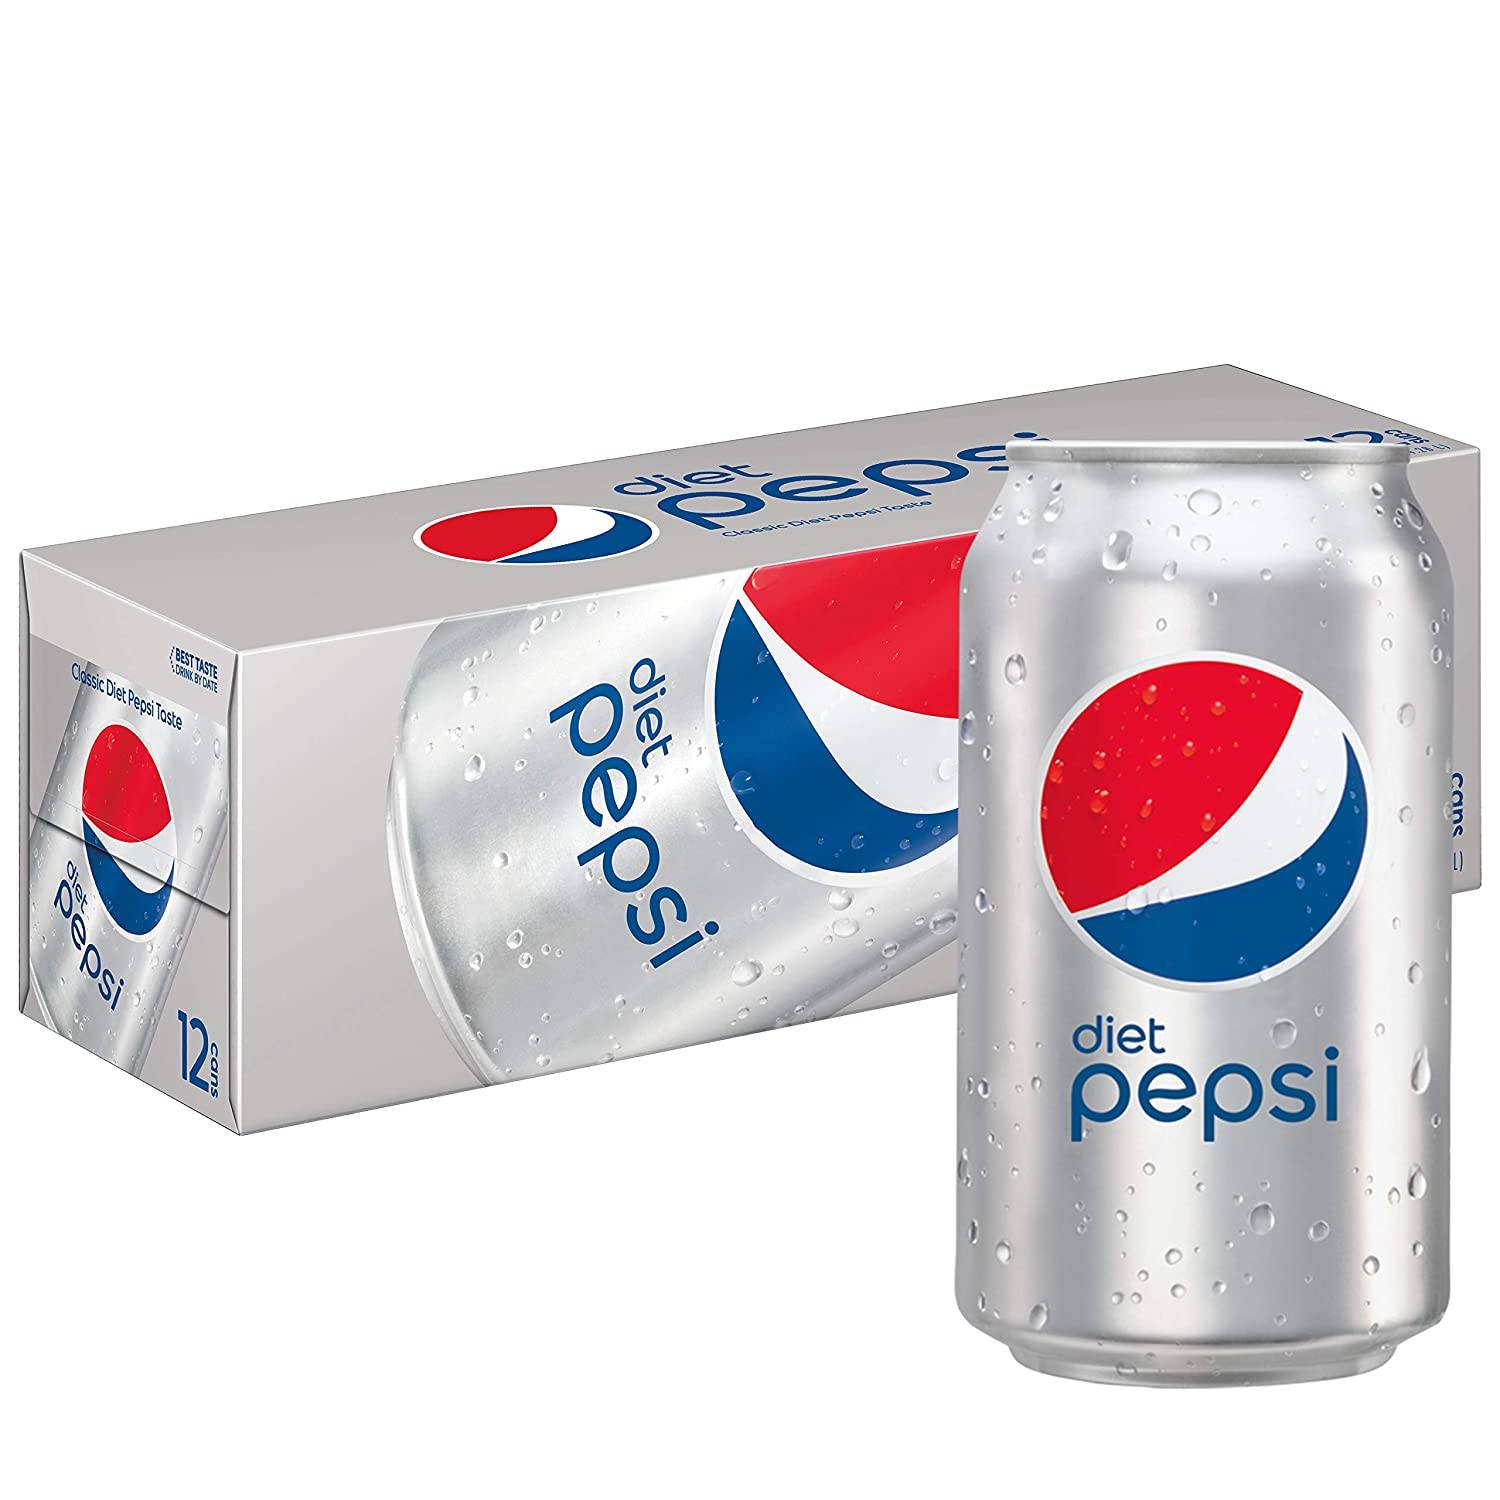  Diet Pepsi Cola. 12 Pack x 12 Oz. 